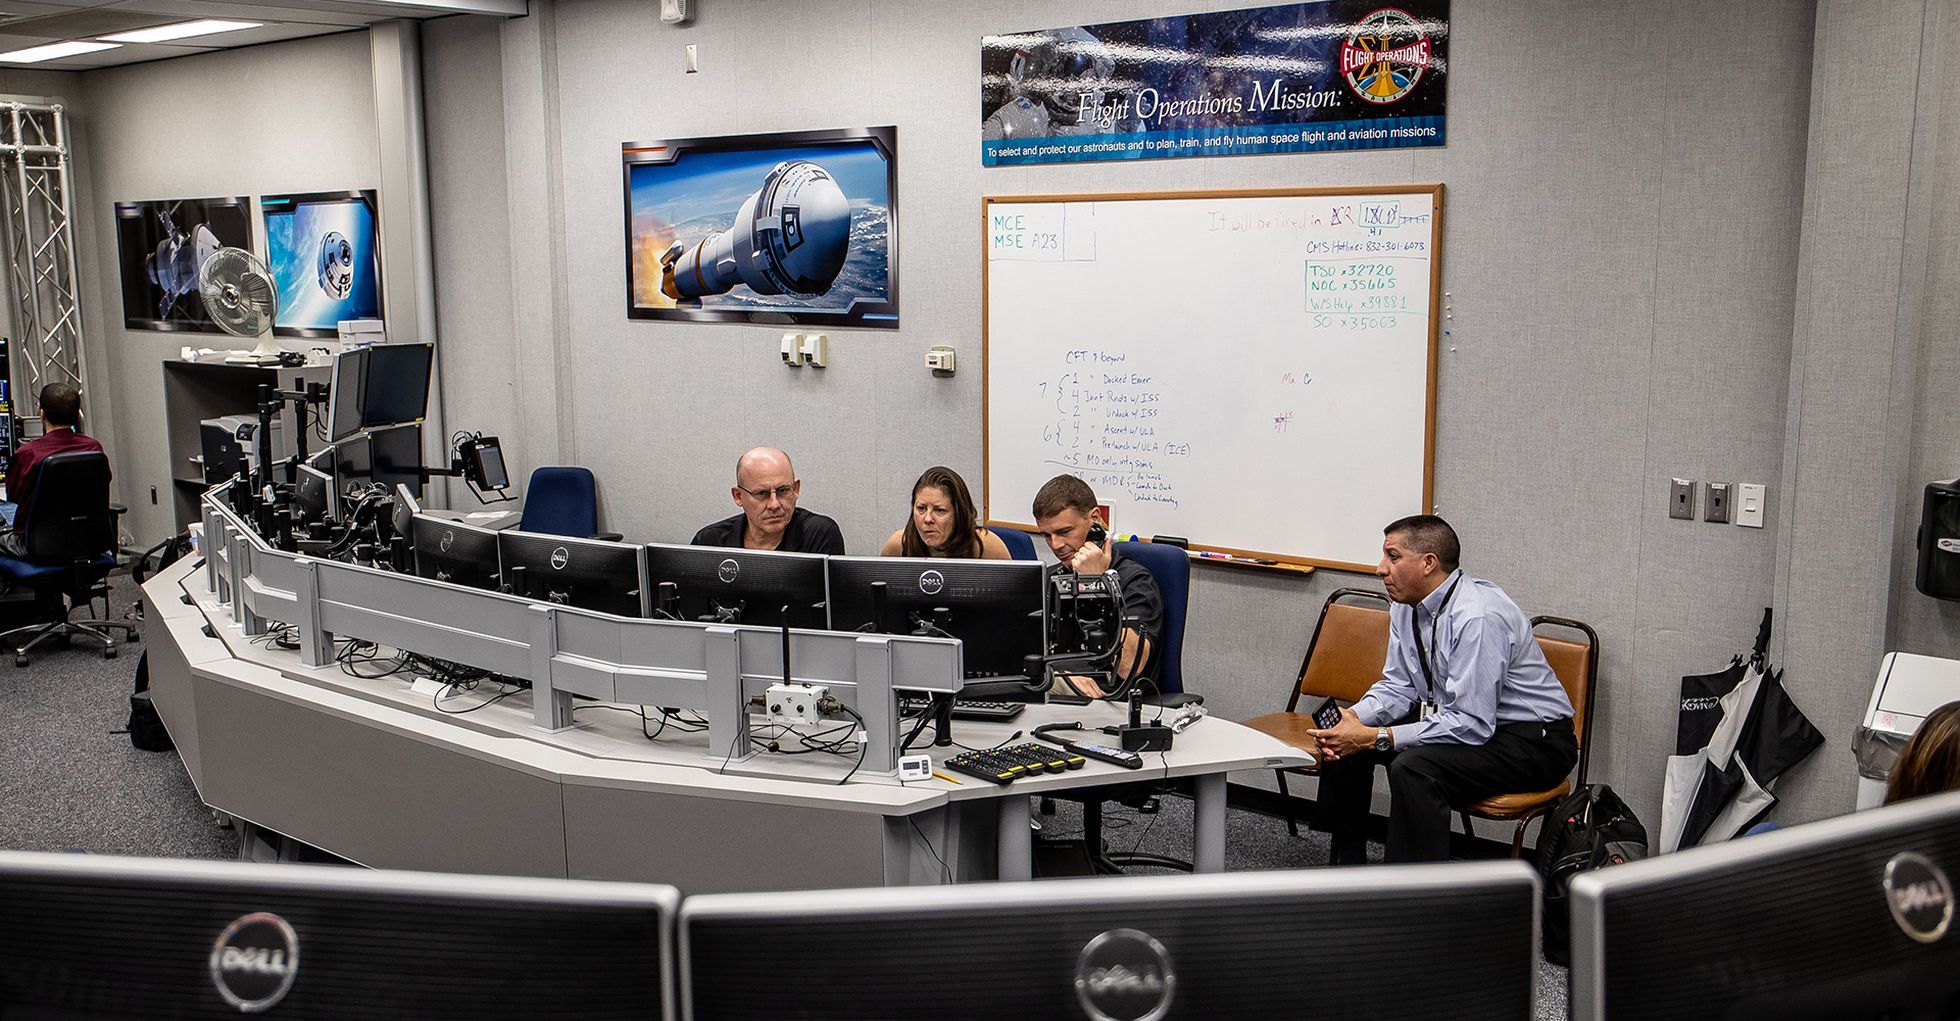 Пока Николь и Крис отрабатывают на симуляторе возвращение Starliner на Землю, за ними следят и их контролируют топ-эксперты центра управления NASA. Во время настоящего полета все должно пройти как по маслу.